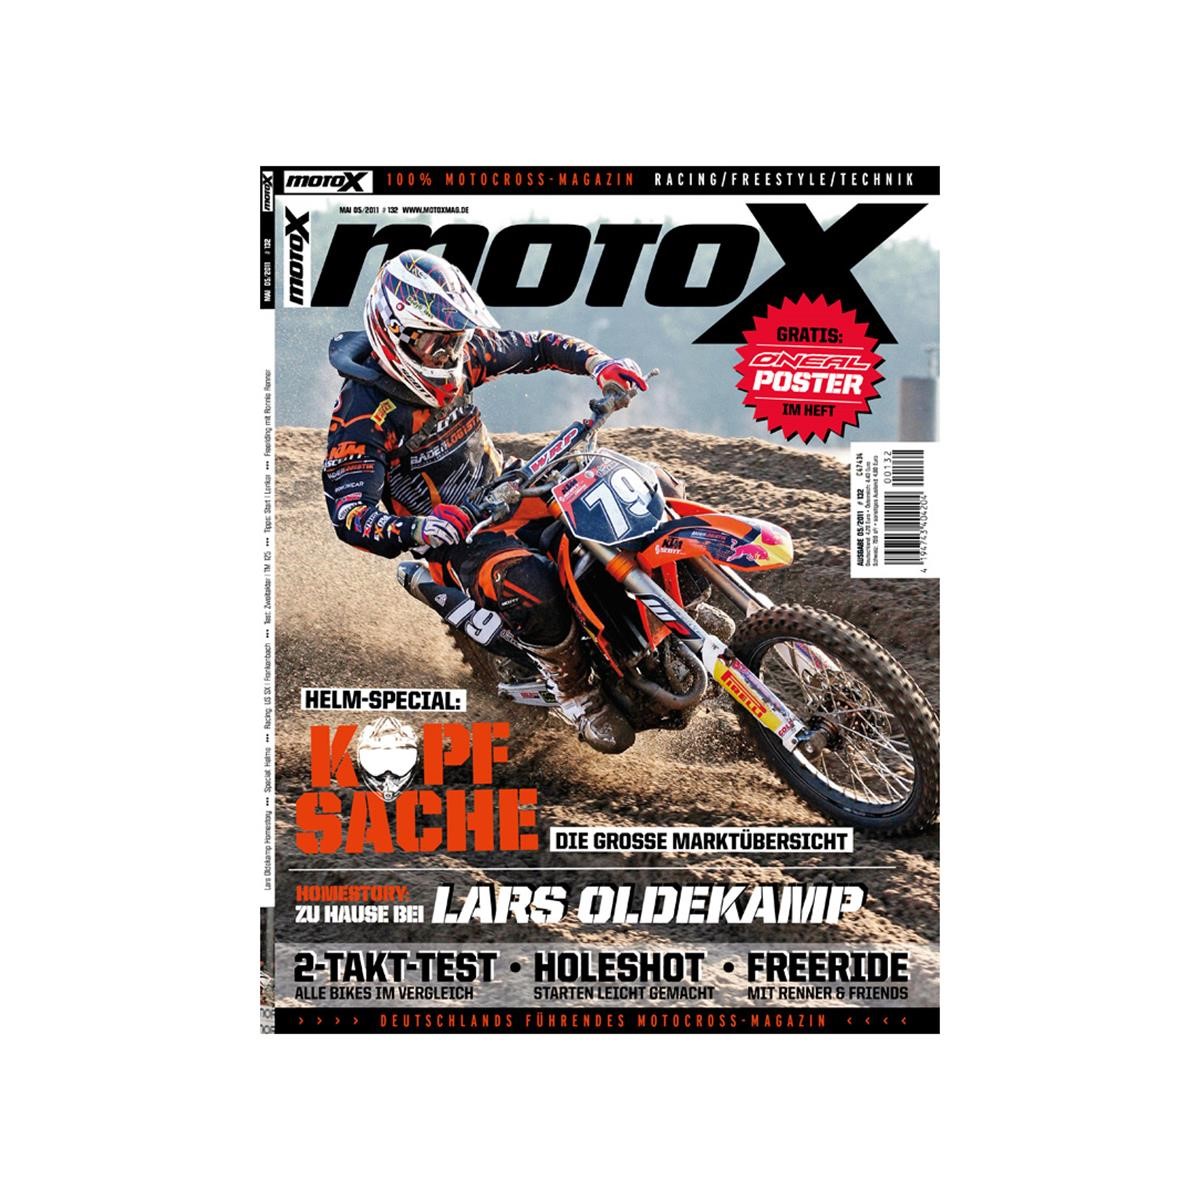 Lebensmittel/Fanartikel/Medien-Zeitschriften/Magazine/Kalender - Magazin MotoX Ausgabe 05/2011